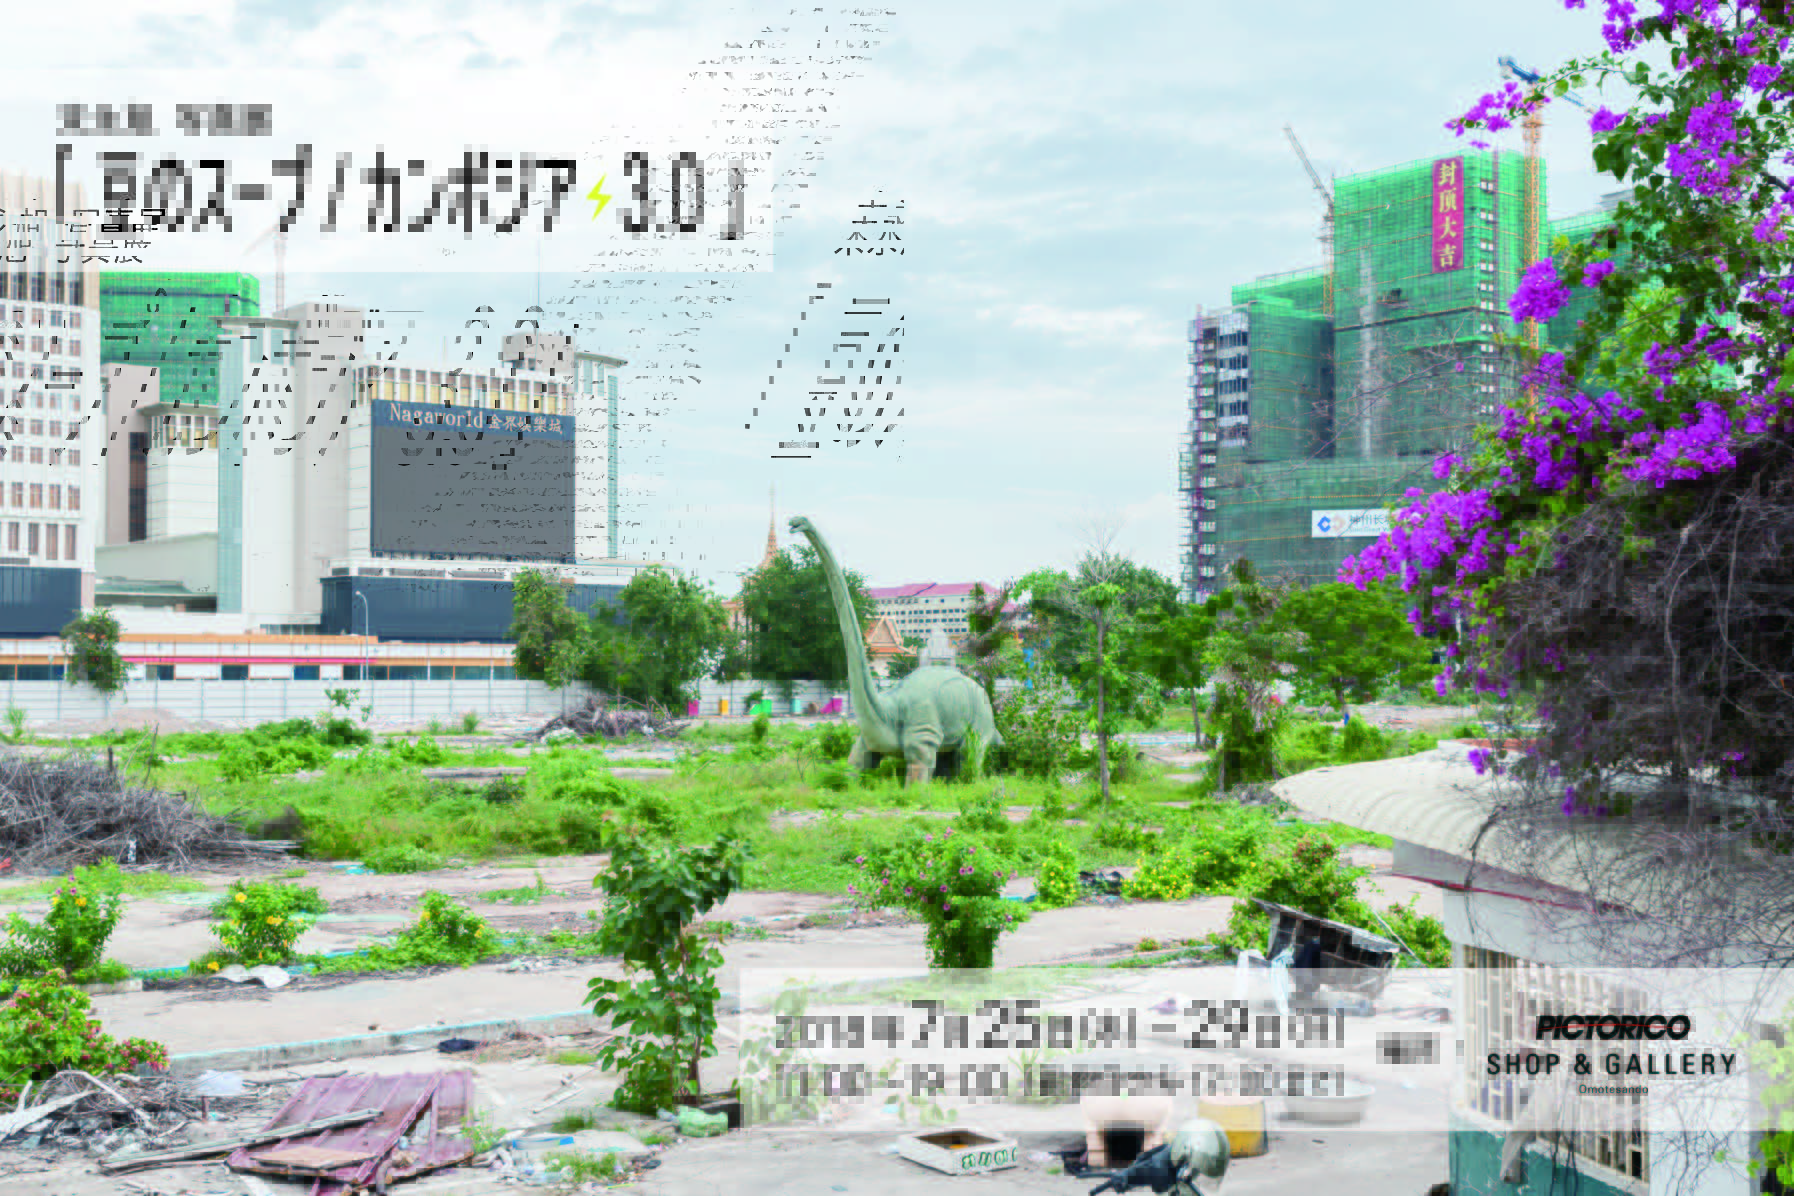 (日本語) 末永旭写真展「豆のスープ/カンボジア3.0」が東京・表参道にて開催